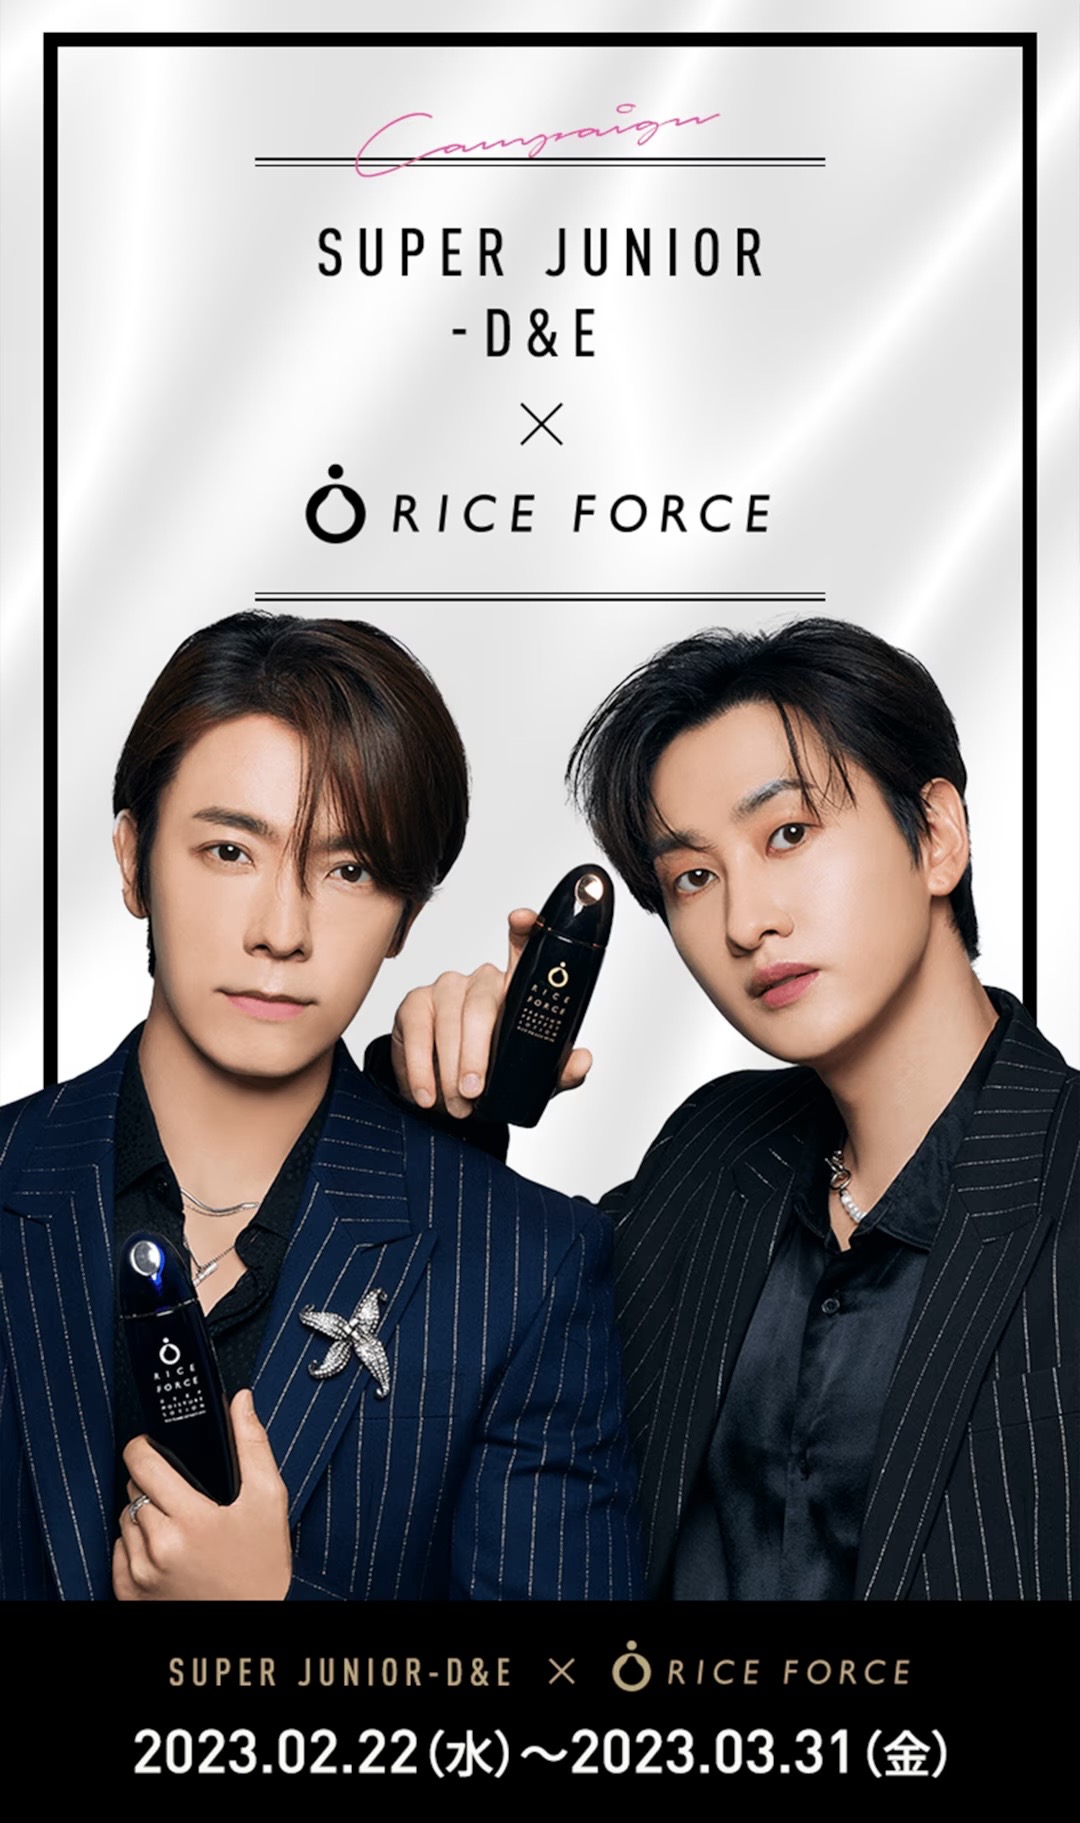 活動D&E X Rice Force 聯名活動＋特典卡資訊 - Super Junior板 | Dcard